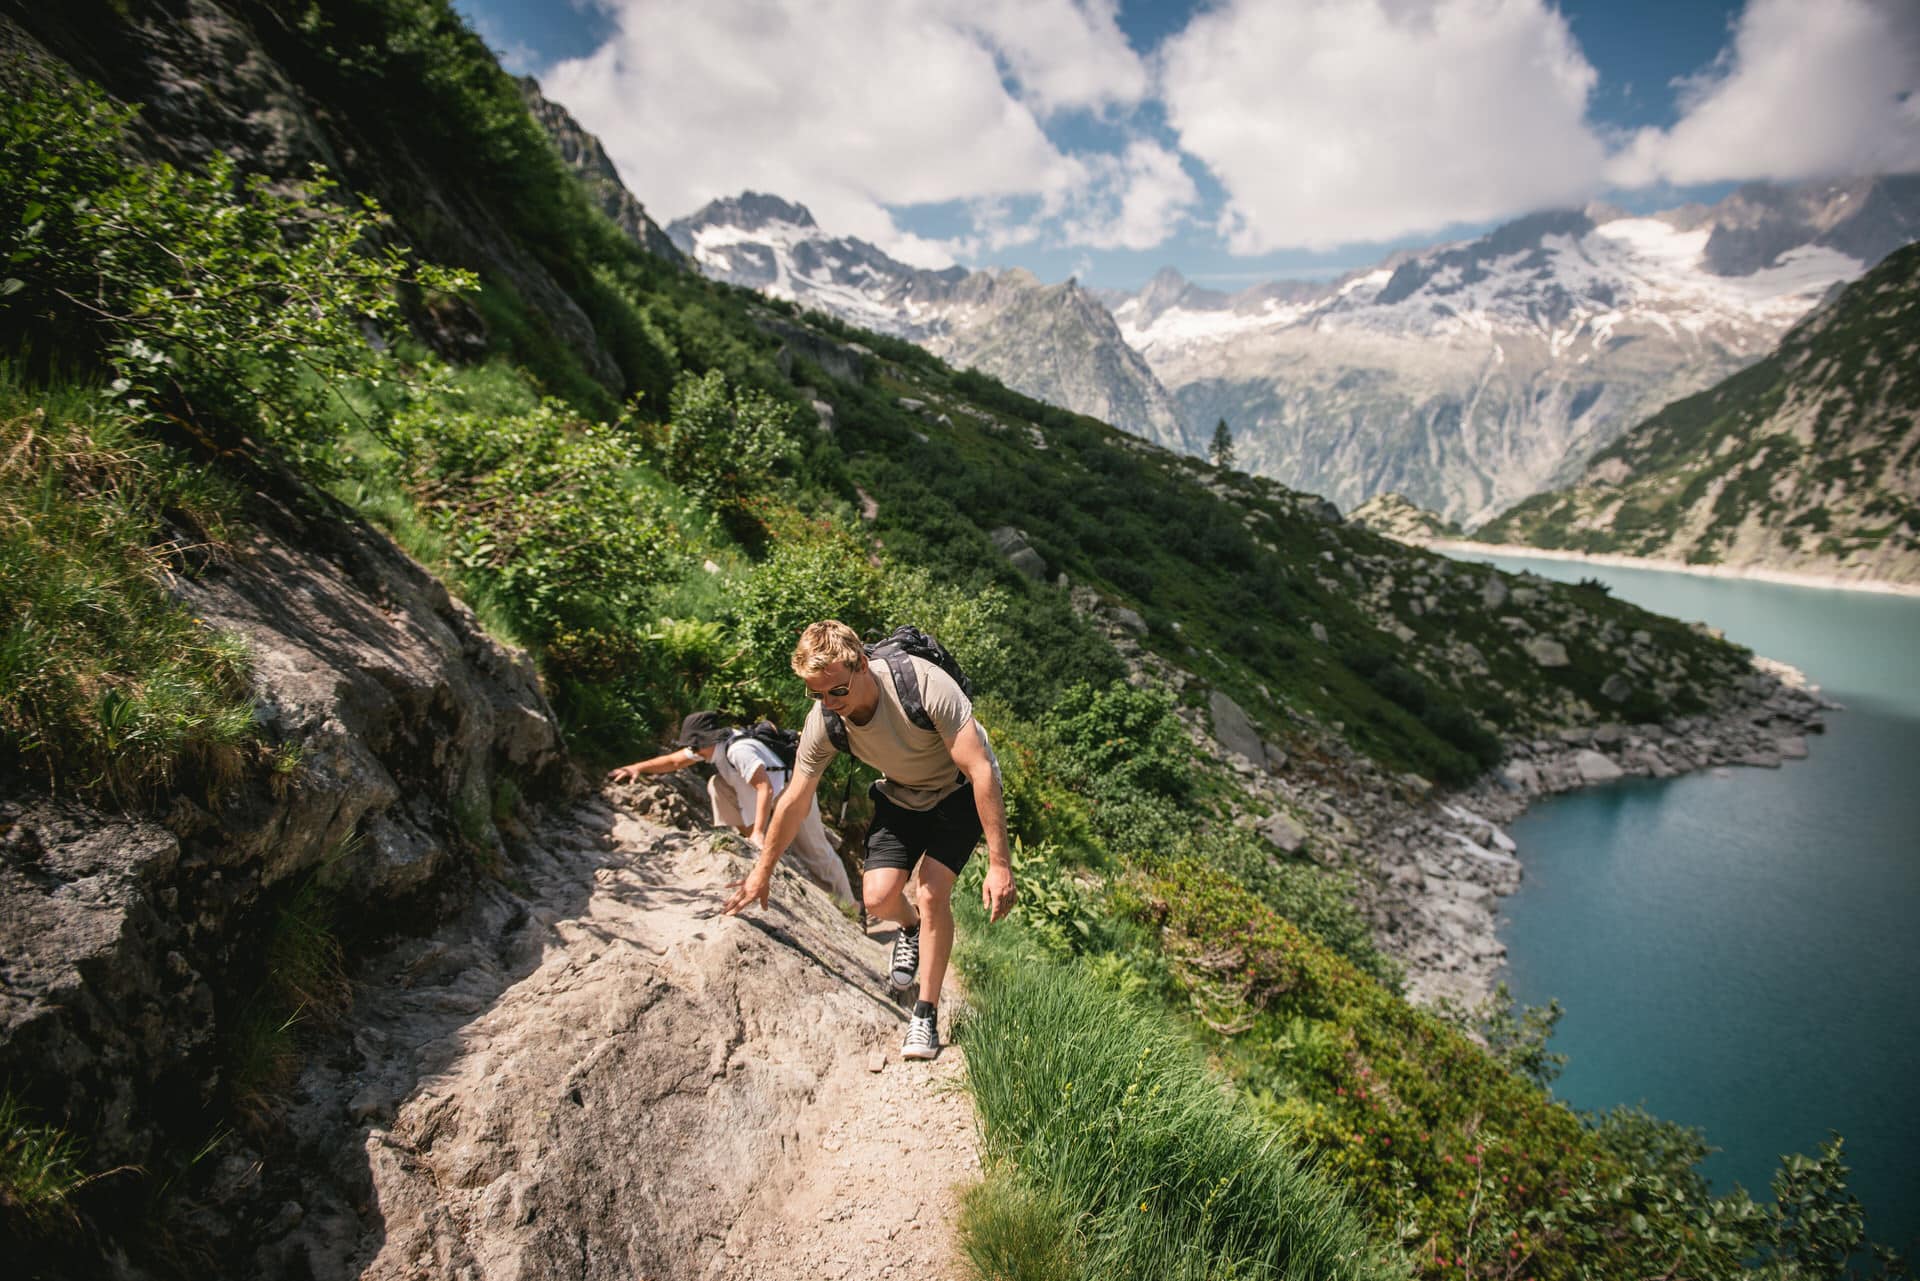 Alpine vistas as love's backdrop - hiking elopement in Switzerland.